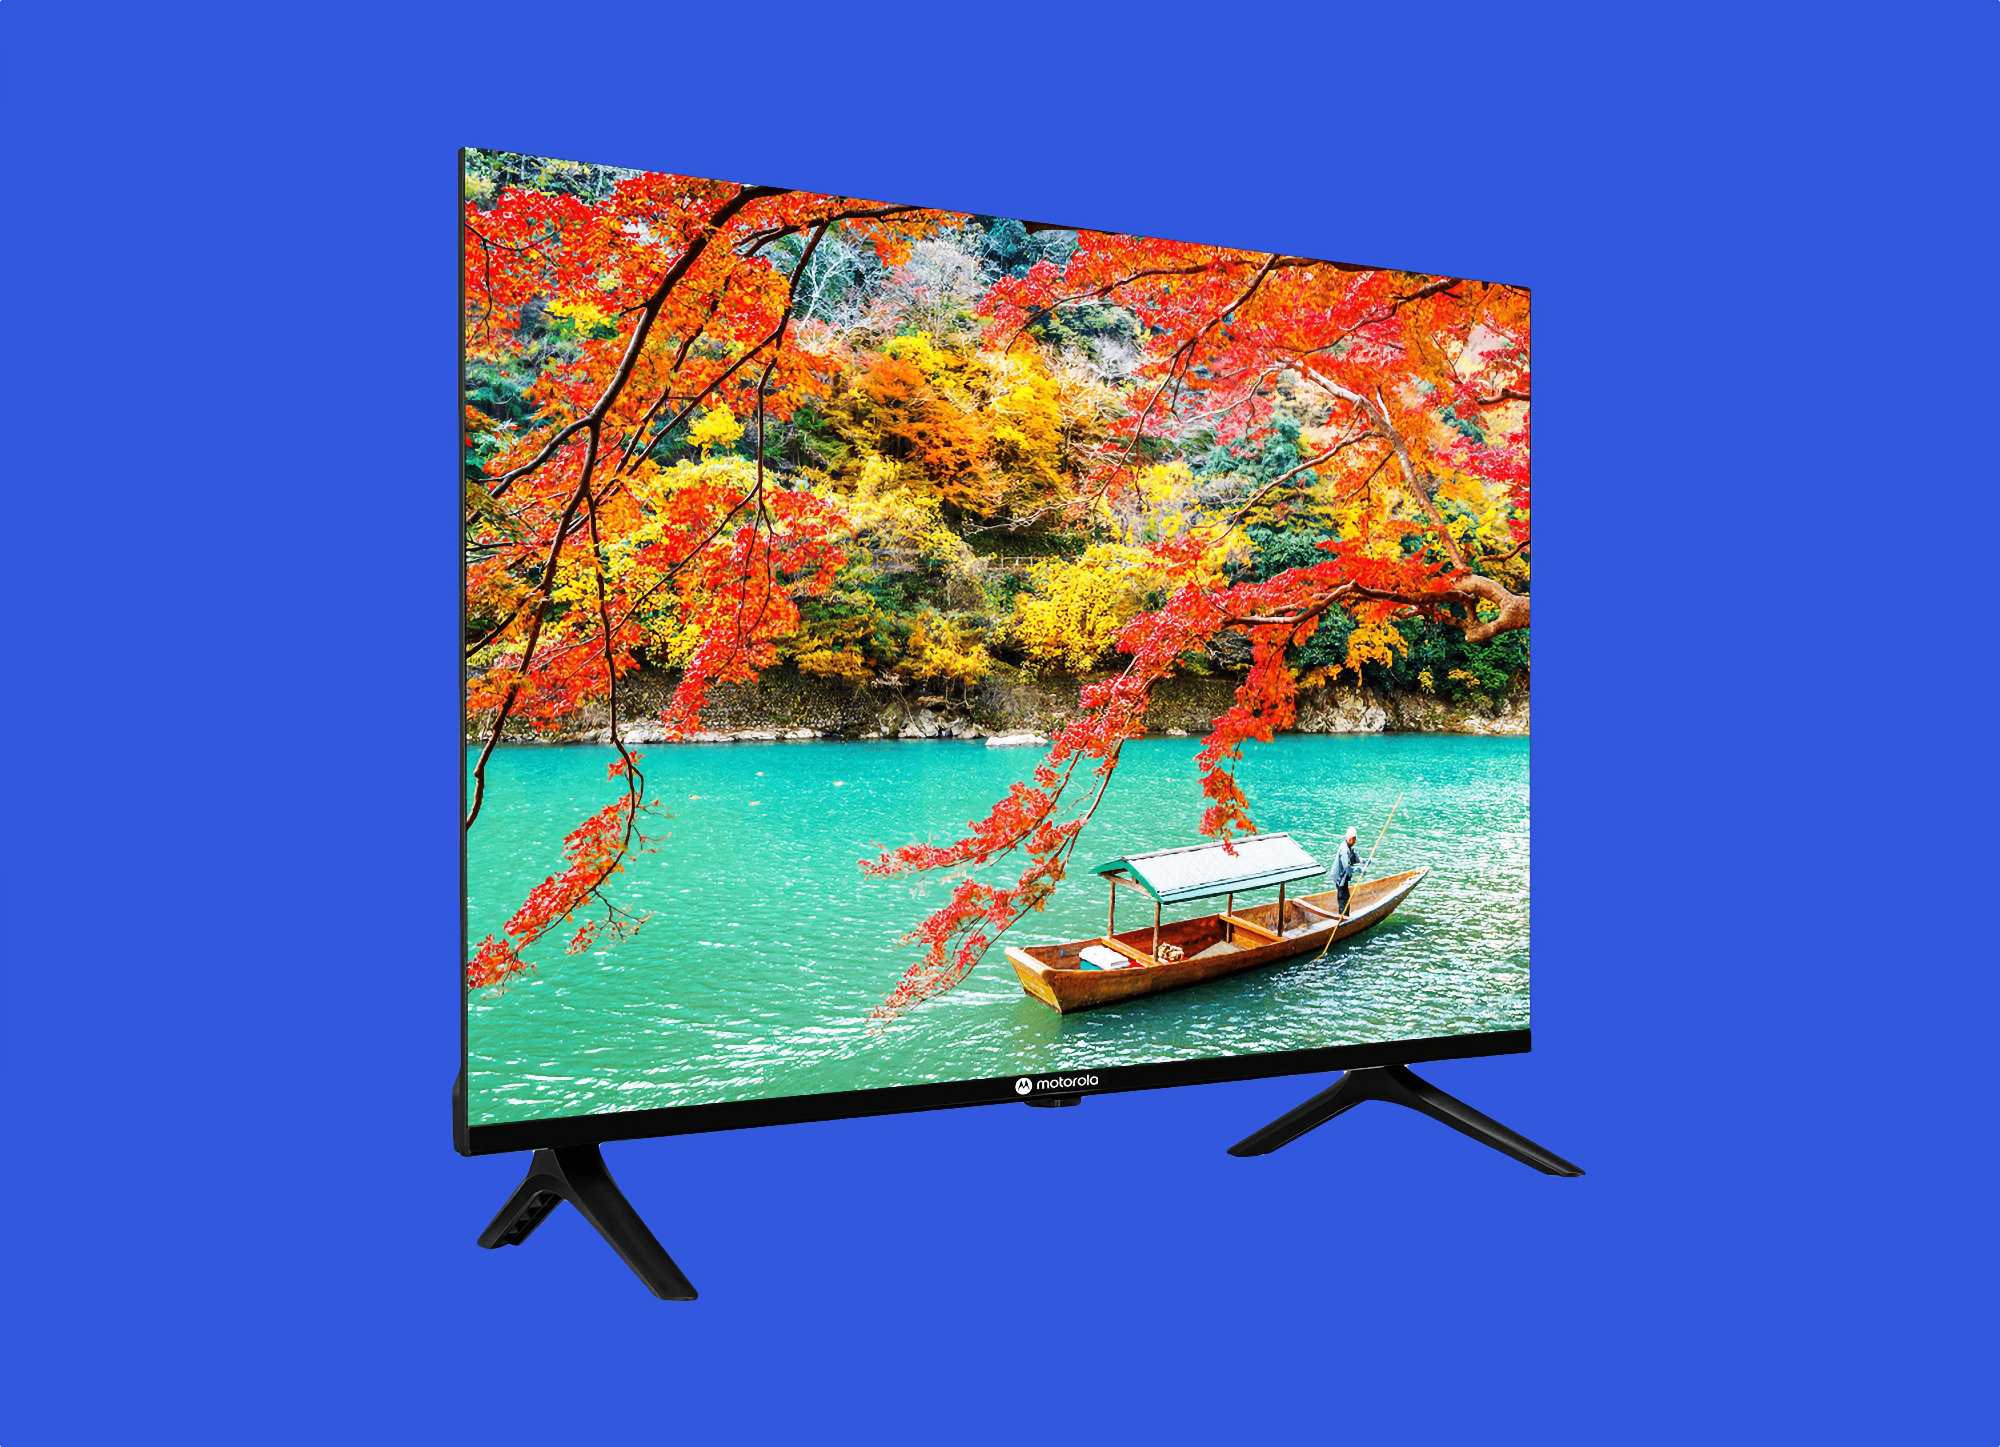 Motorola prepara el lanzamiento de la gama Envision Smart TV con pantallas de hasta 55 pulgadas y chips MediaTek